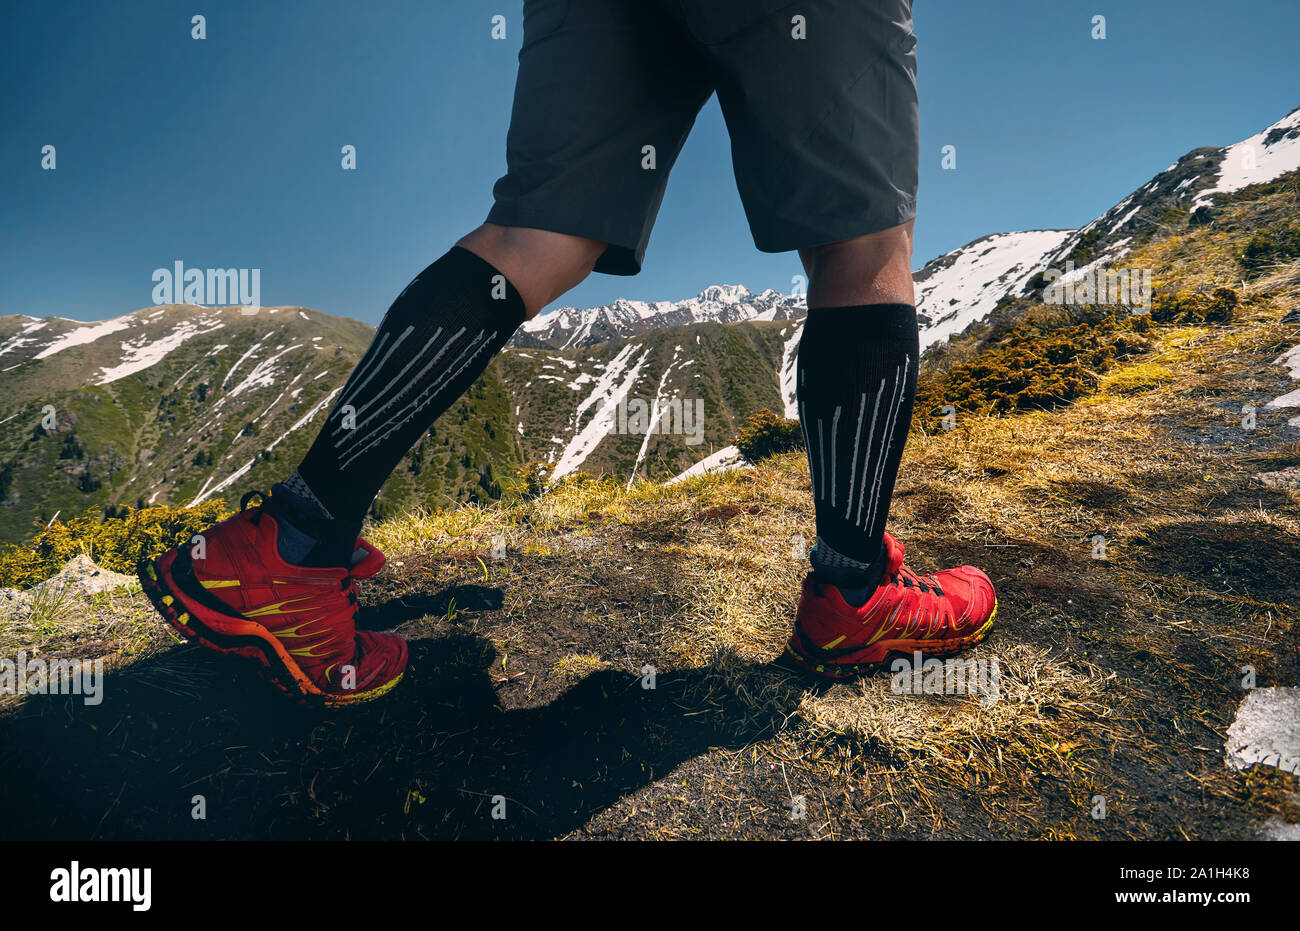 Nahaufnahme von Wanderer Beine in rote Schuhe Klettern in den Bergen und blauer Himmel. Gesunde Lebensweise. Outdoor Travel Concept. Stockfoto